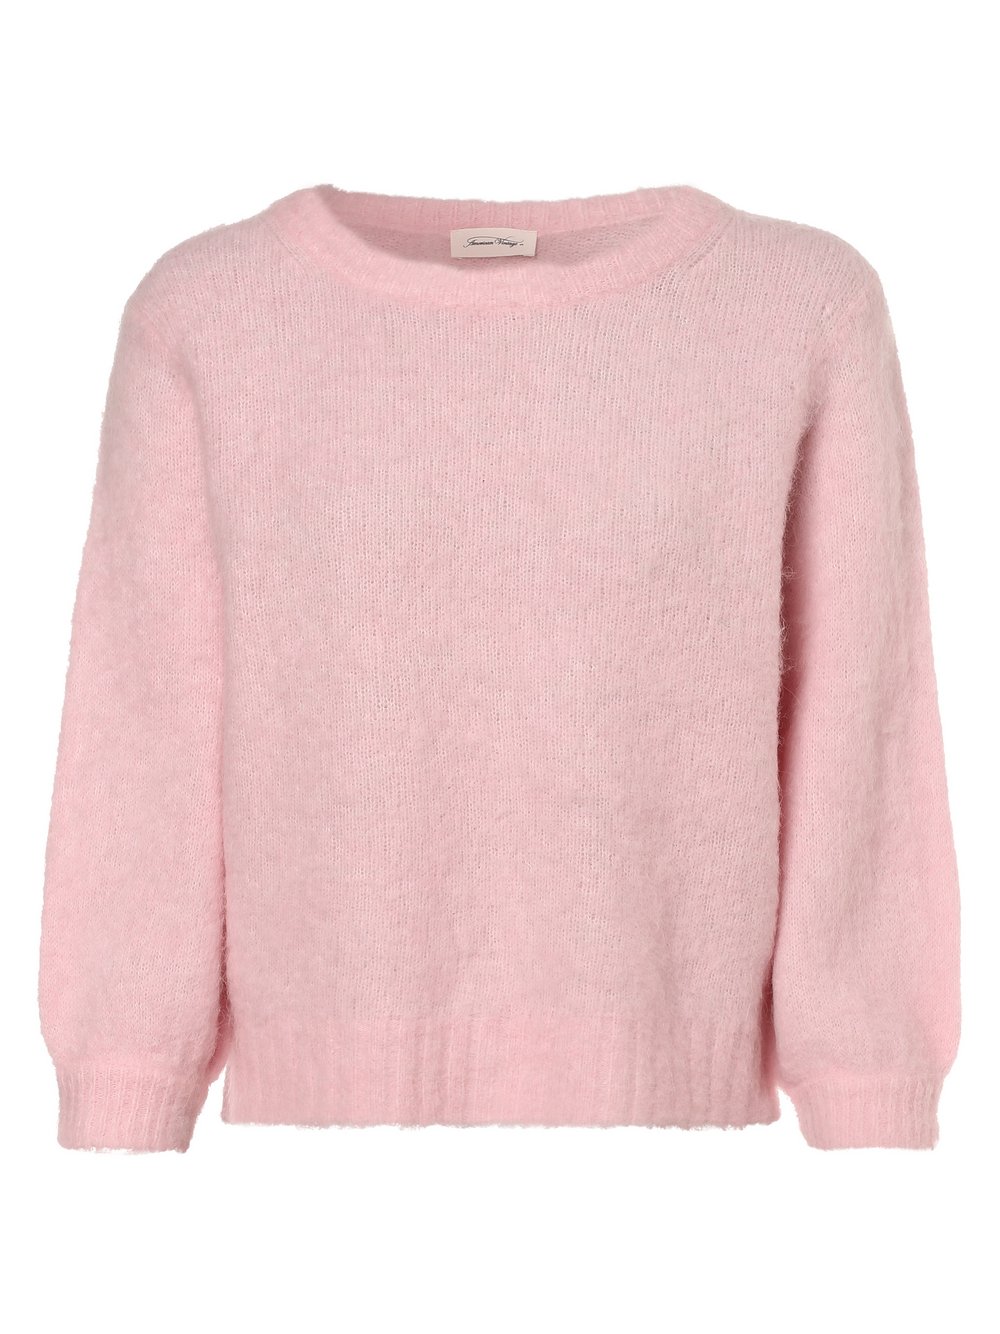 American vintage - Sweter damski z dodatkiem alpaki – Foubay, różowy